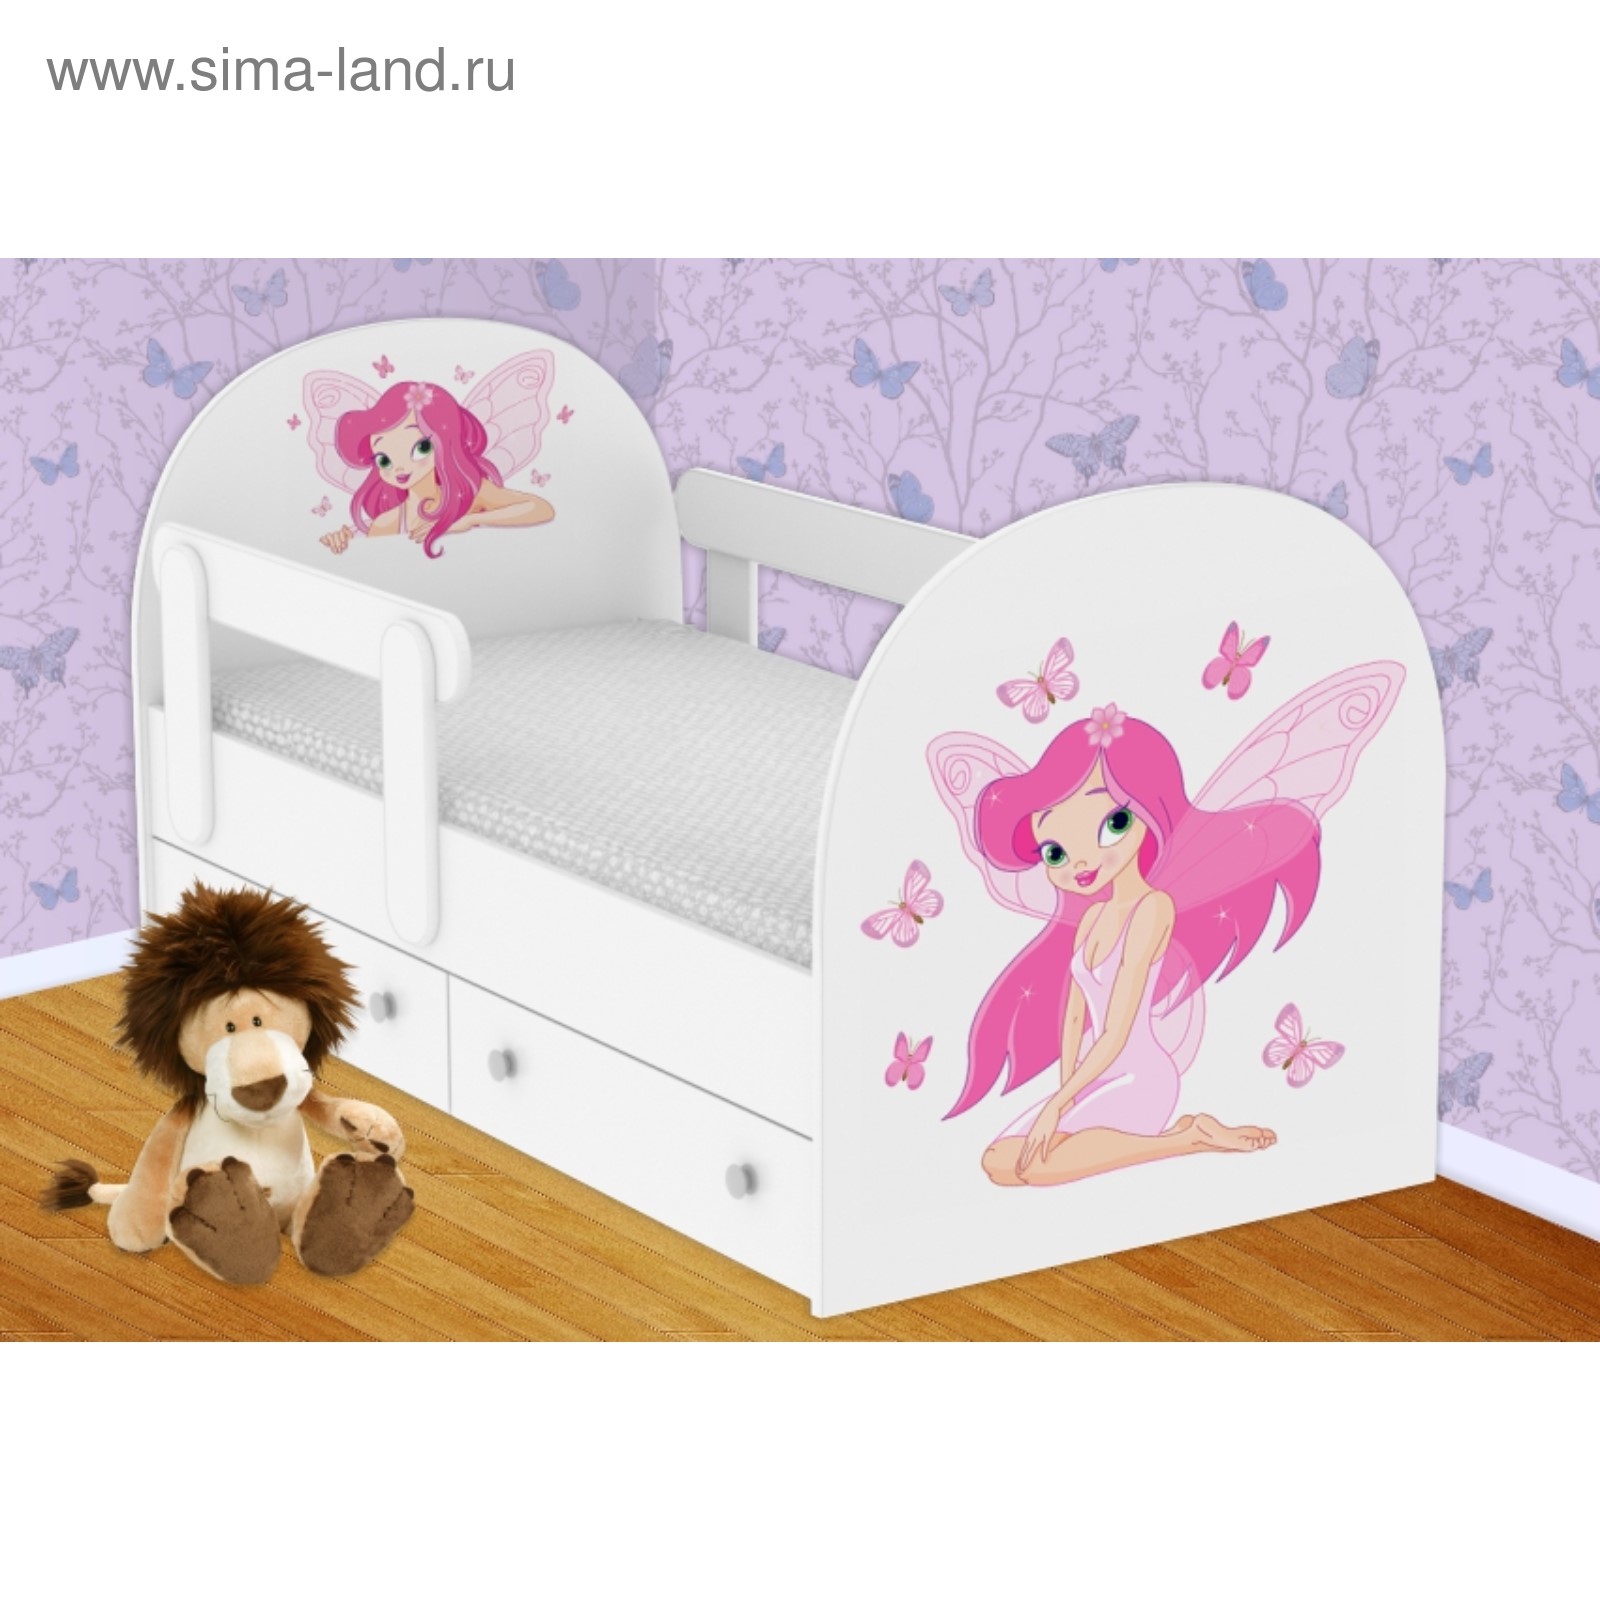 кровать для девочки двух лет